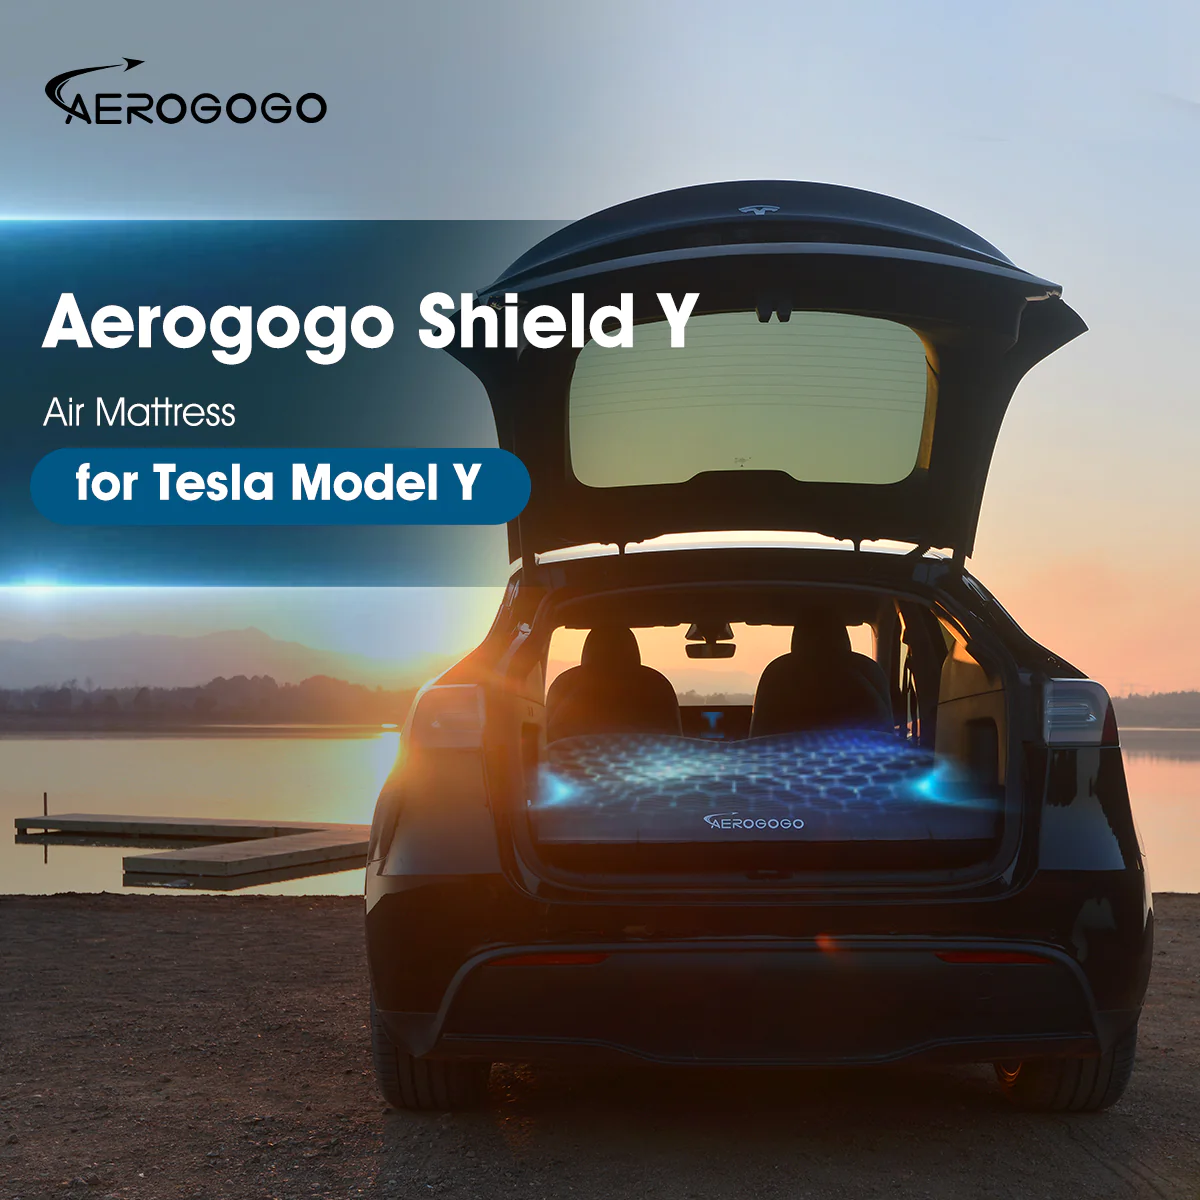 Aerogogo Shield Y automatic air mattress